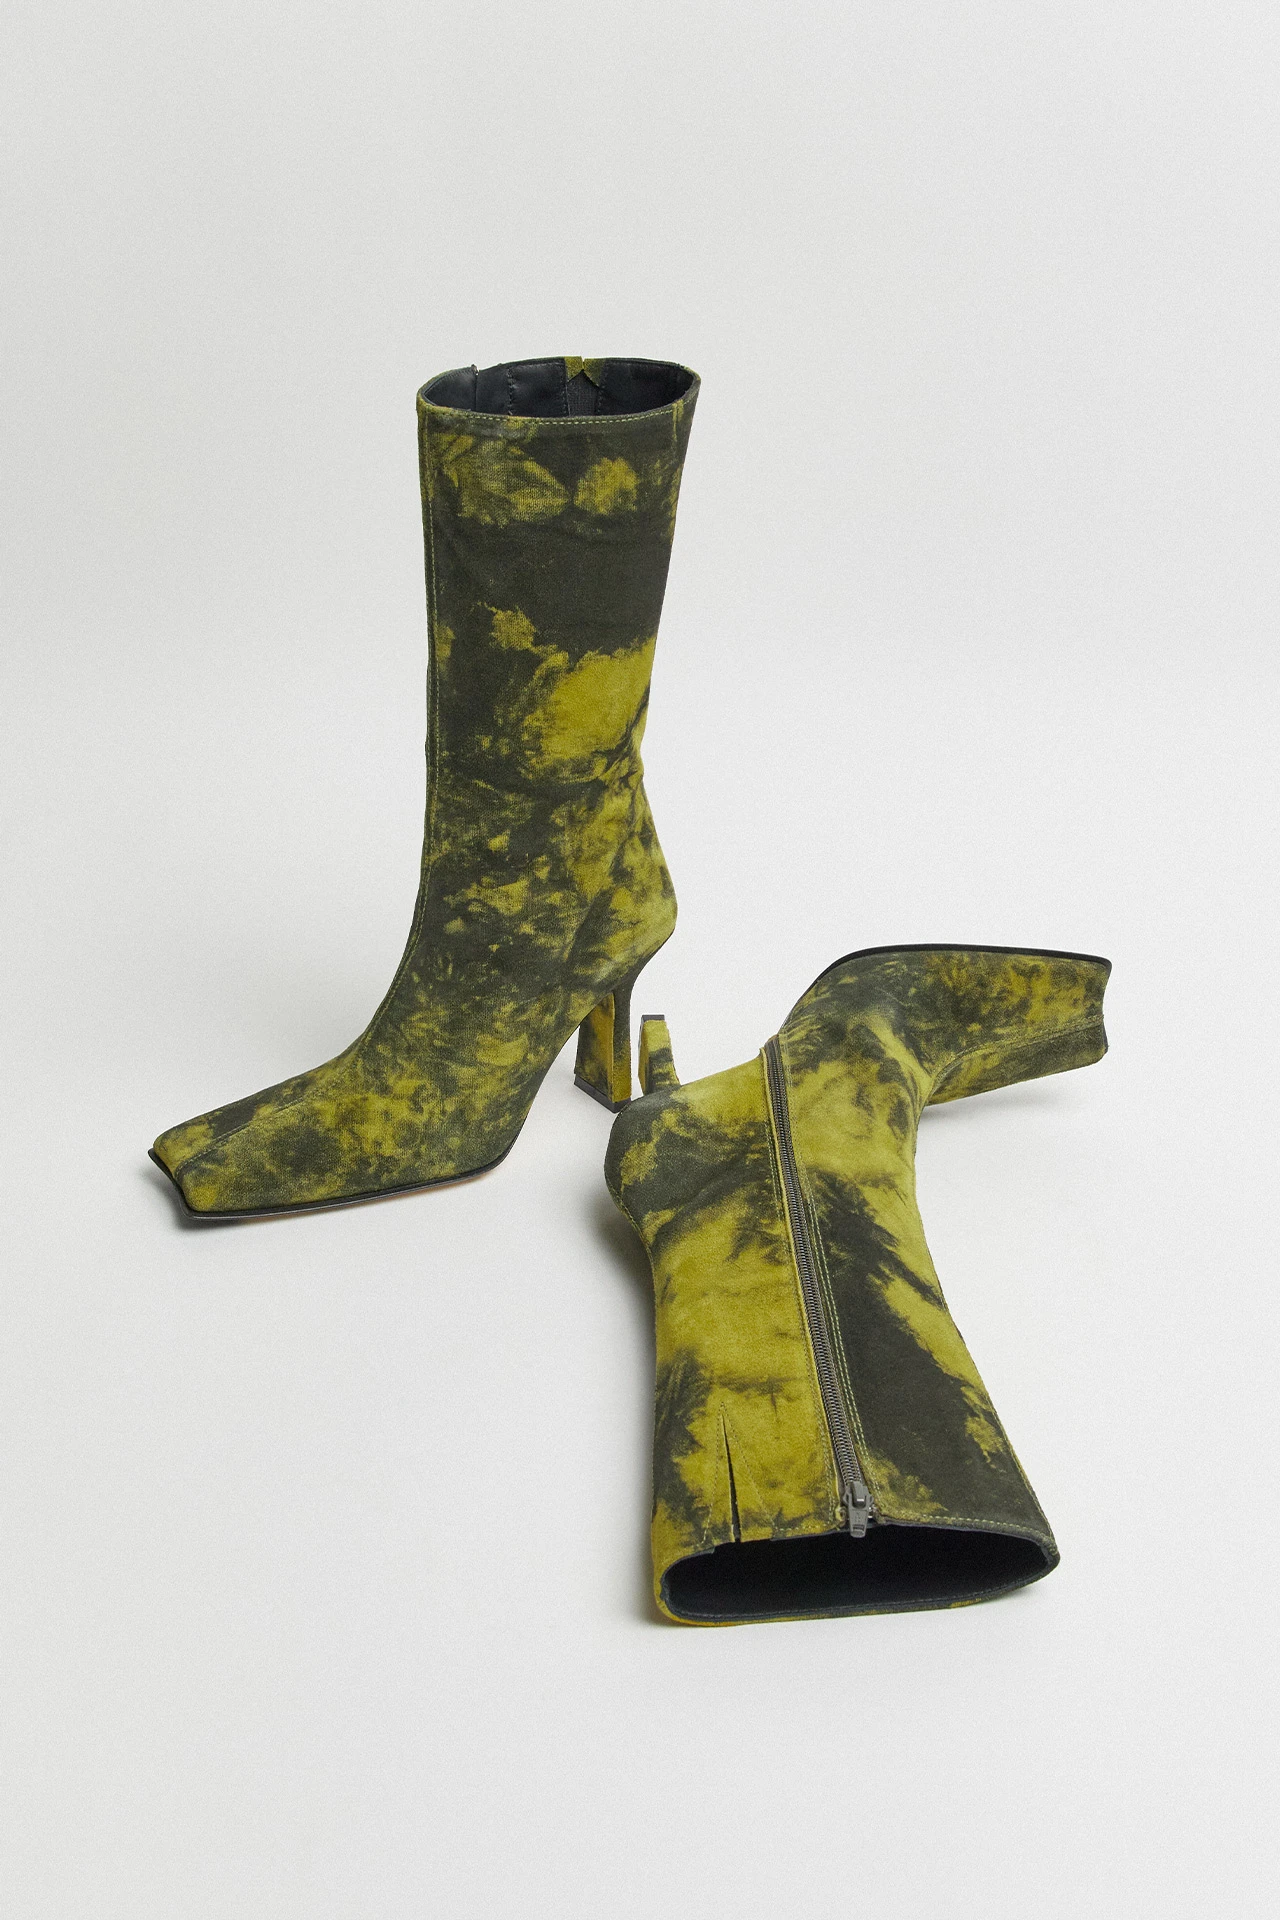 Miista-noor-yellow-boots-02